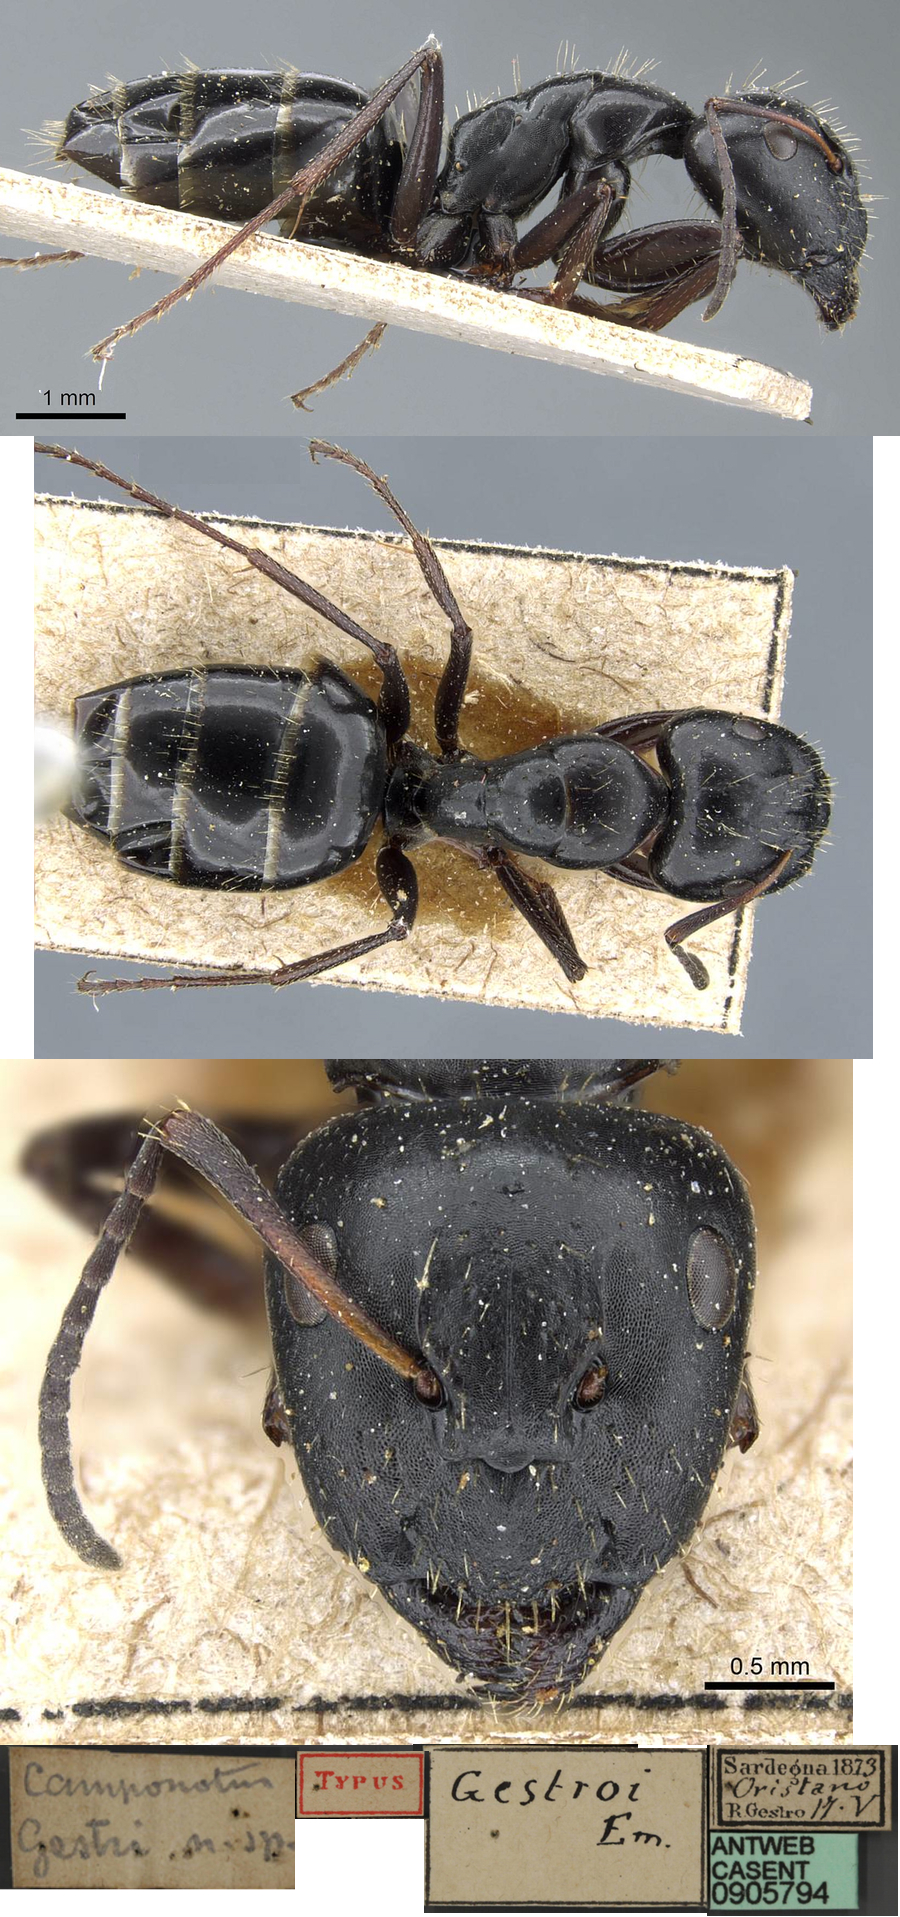 Camponotus gestroi major